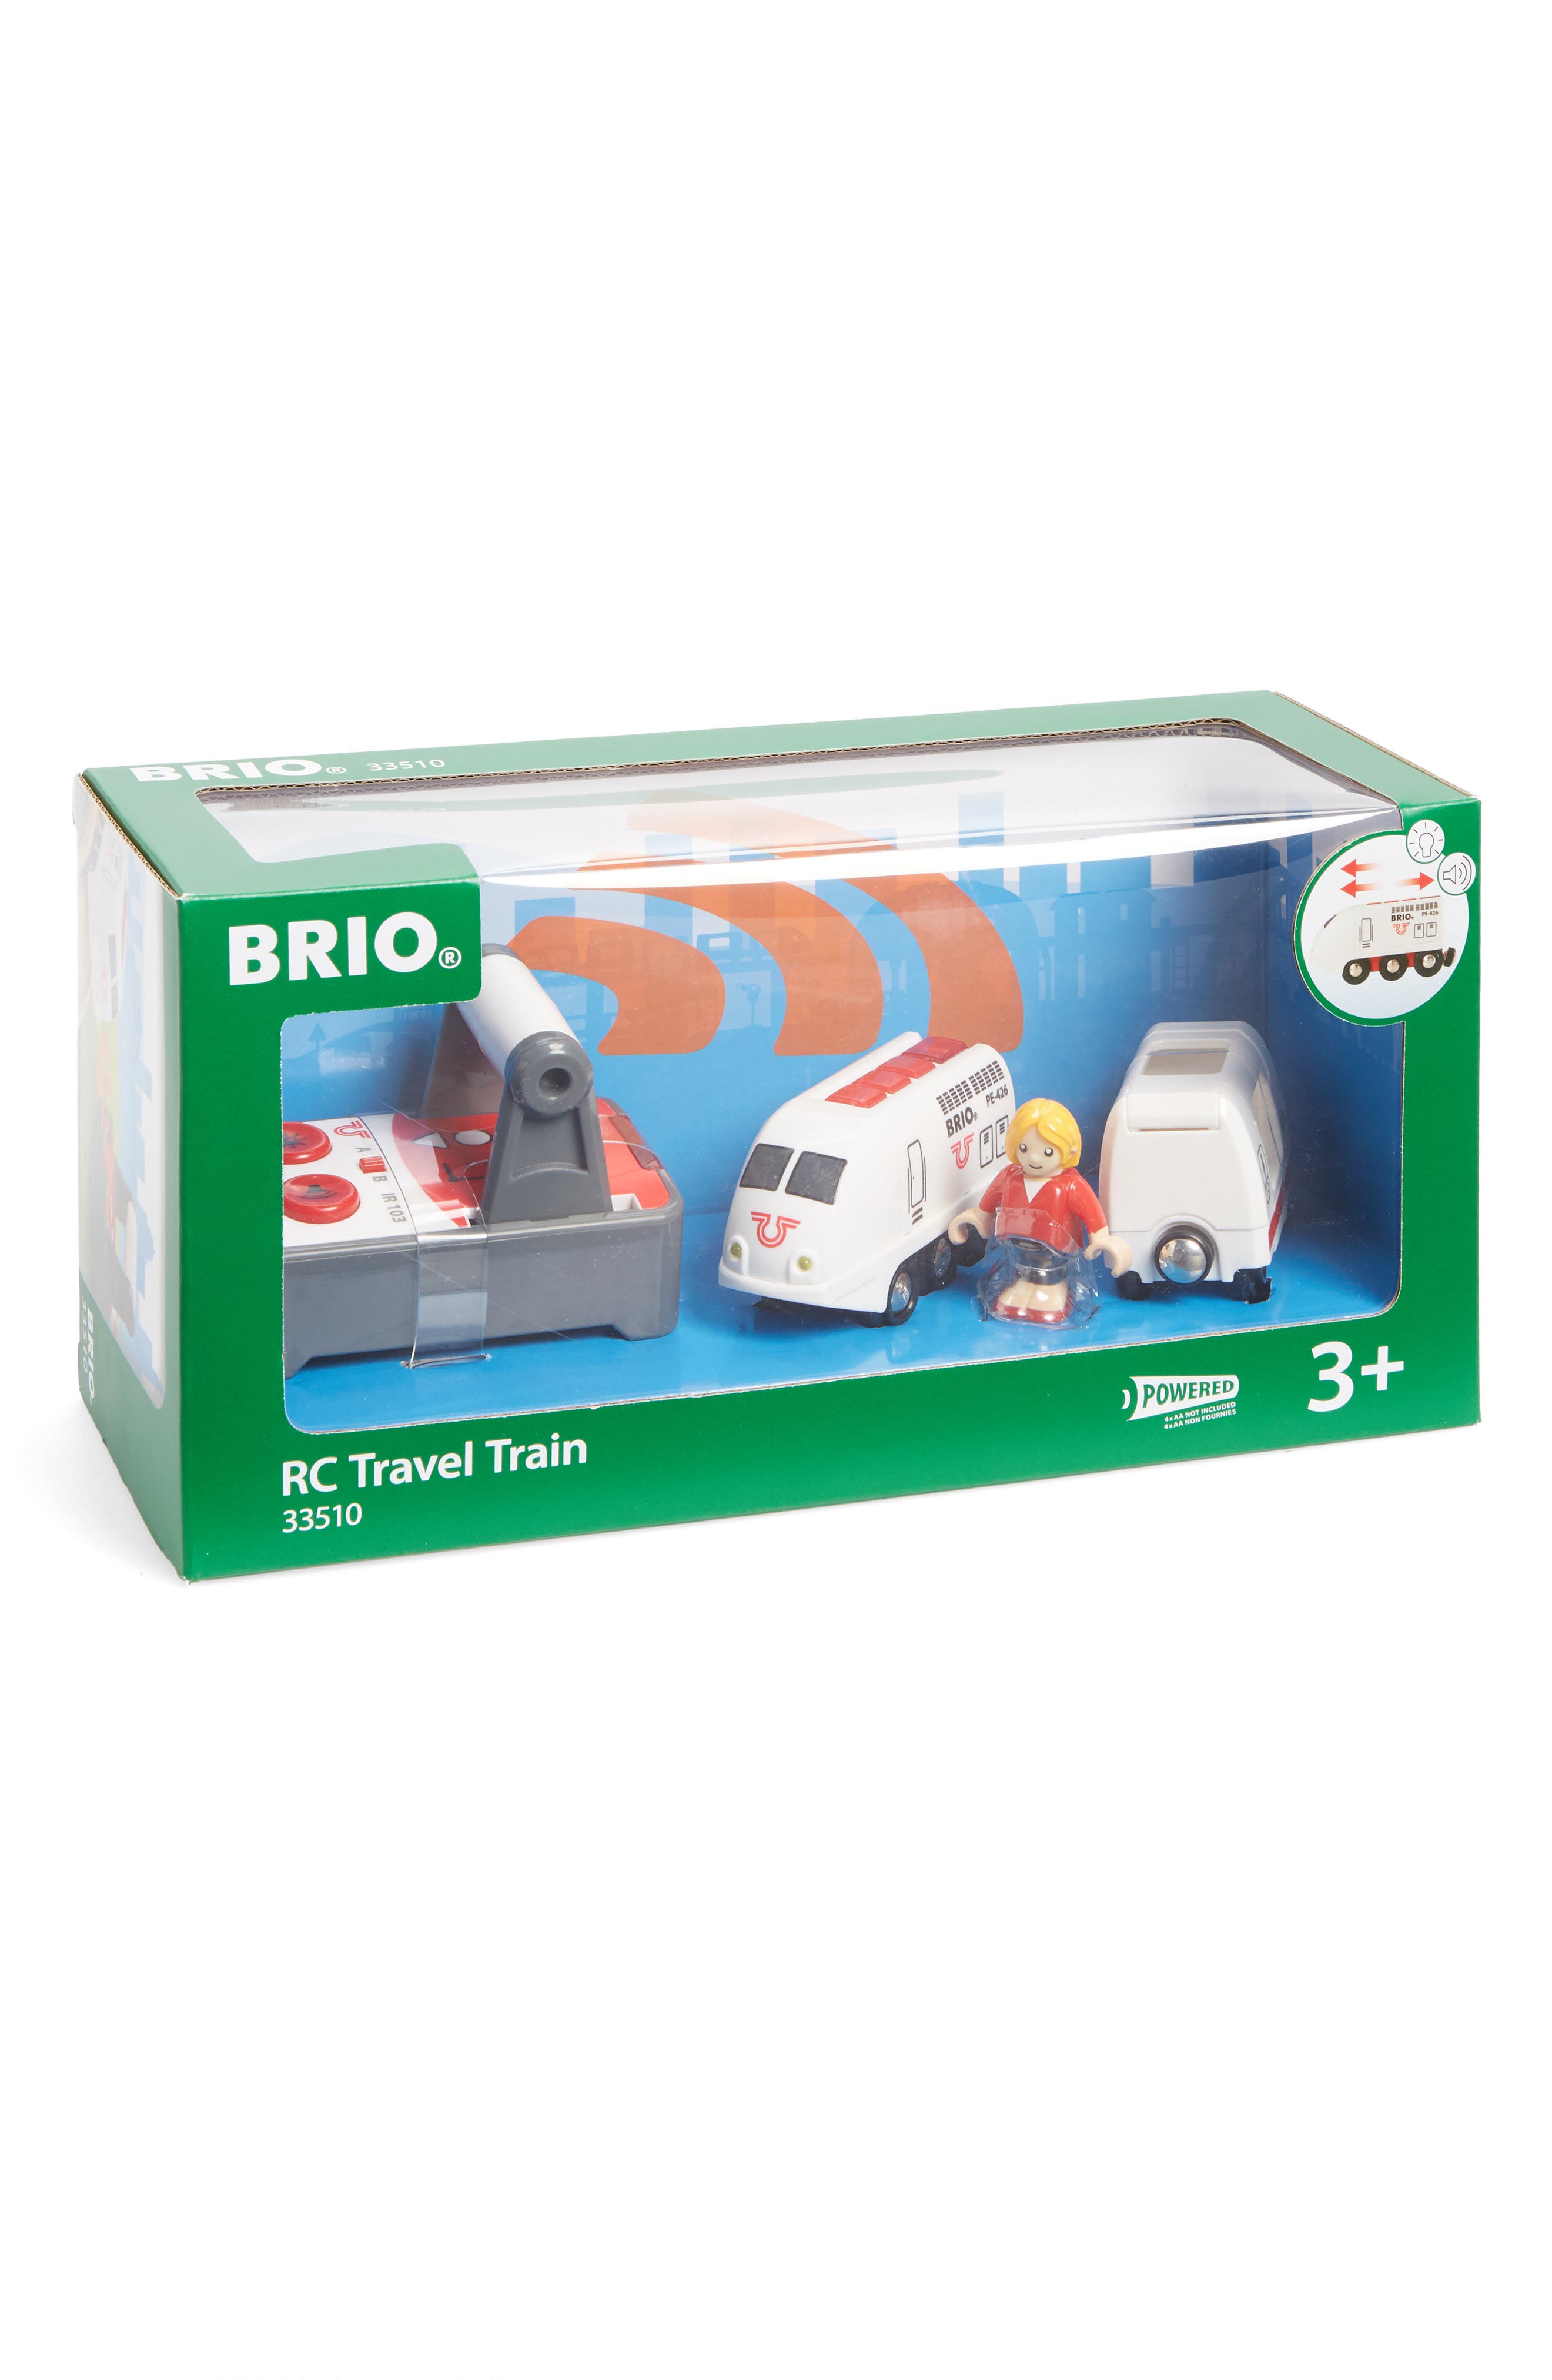 brio remote control travel train